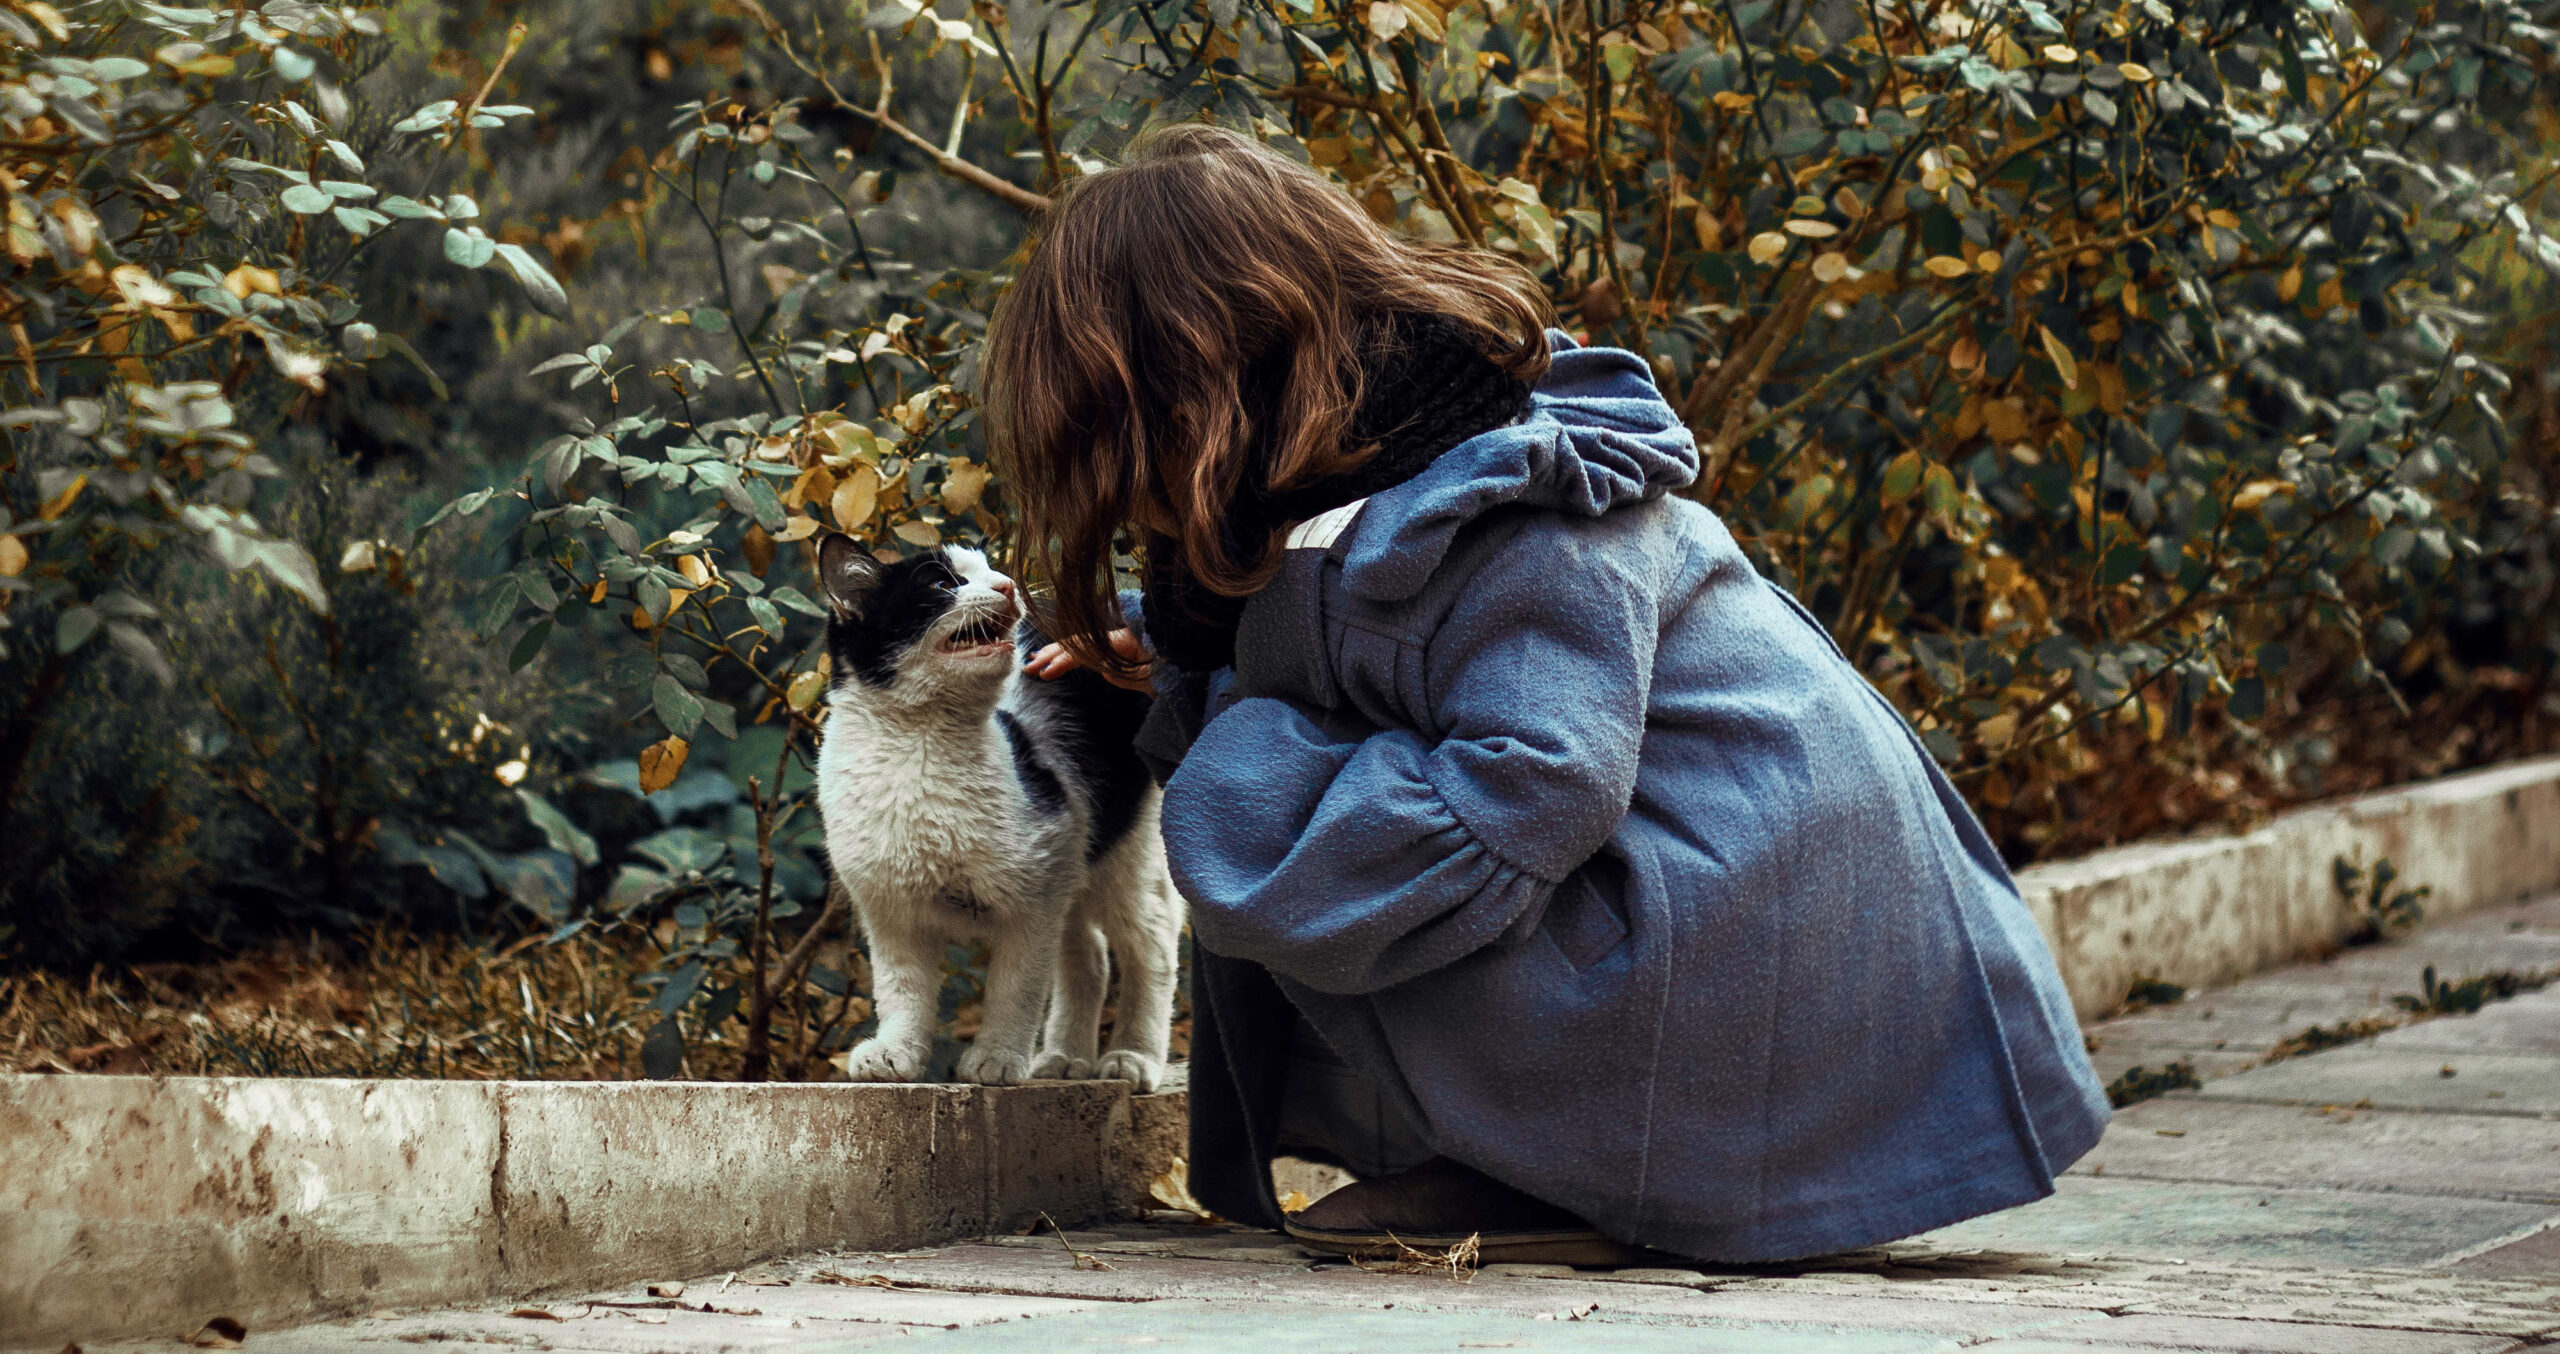 a child petting a dog